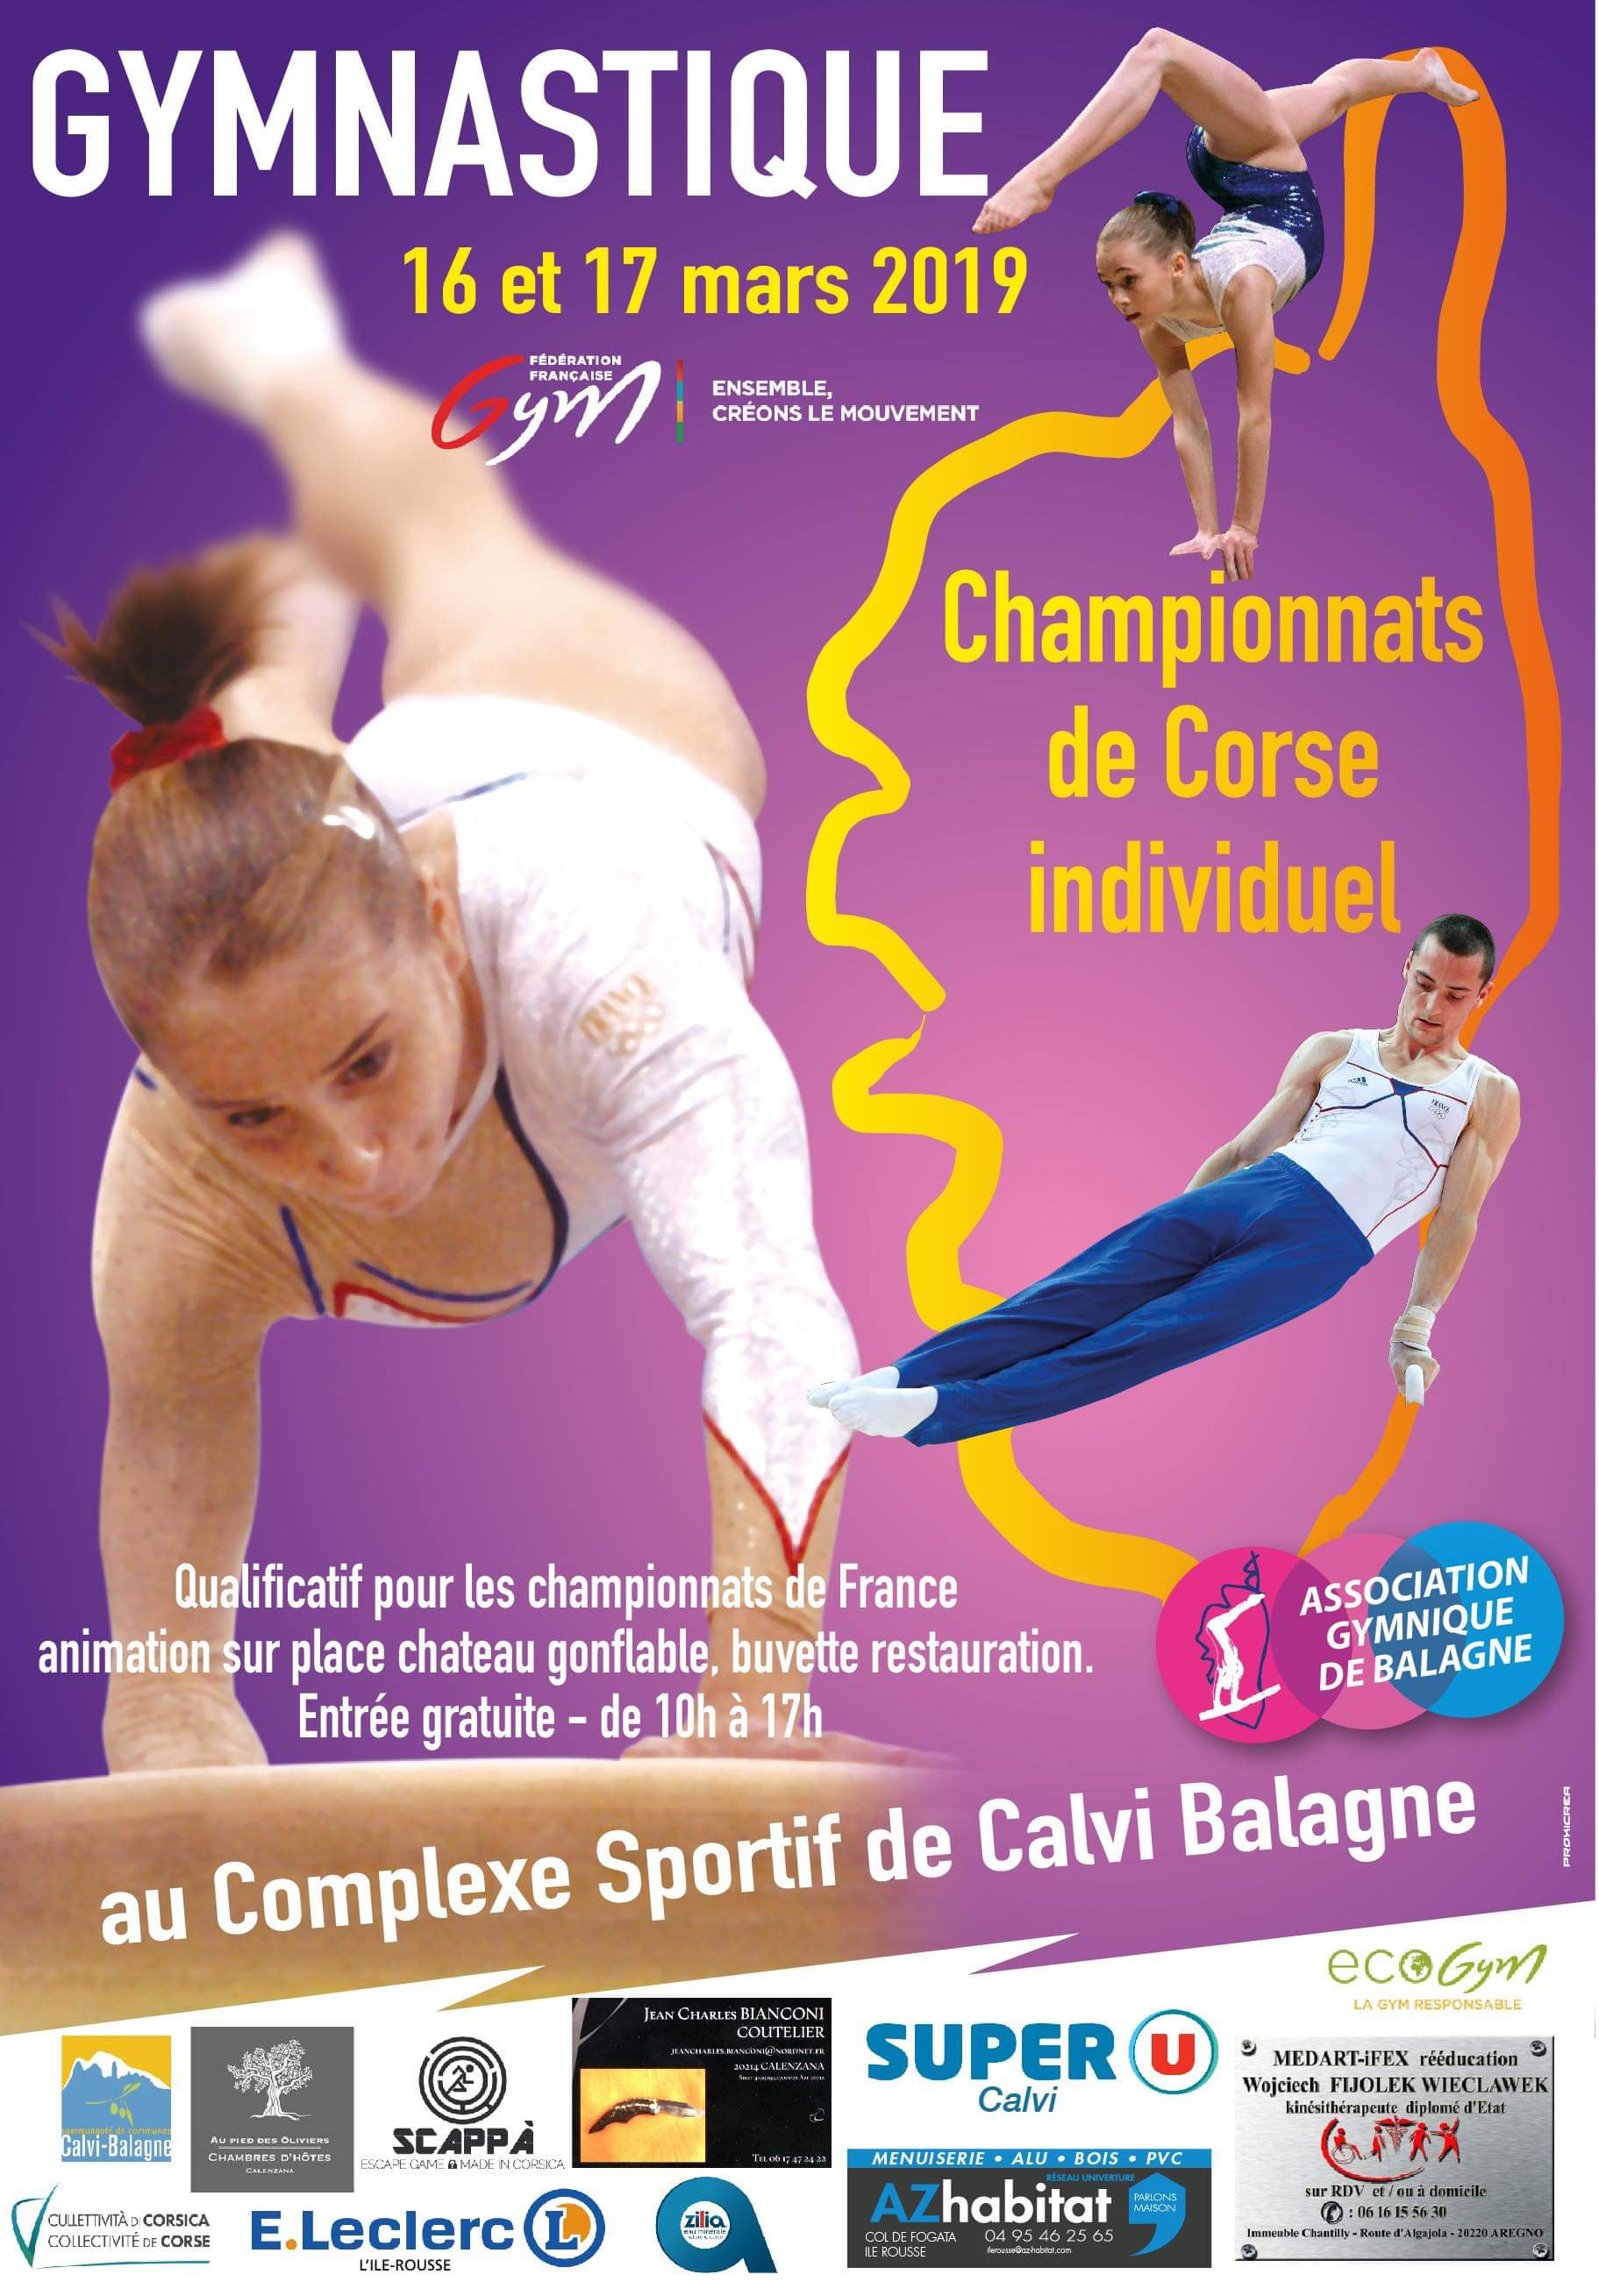 Championnats de Corse de Gymnastique les 16 et 17 mars à Calvi